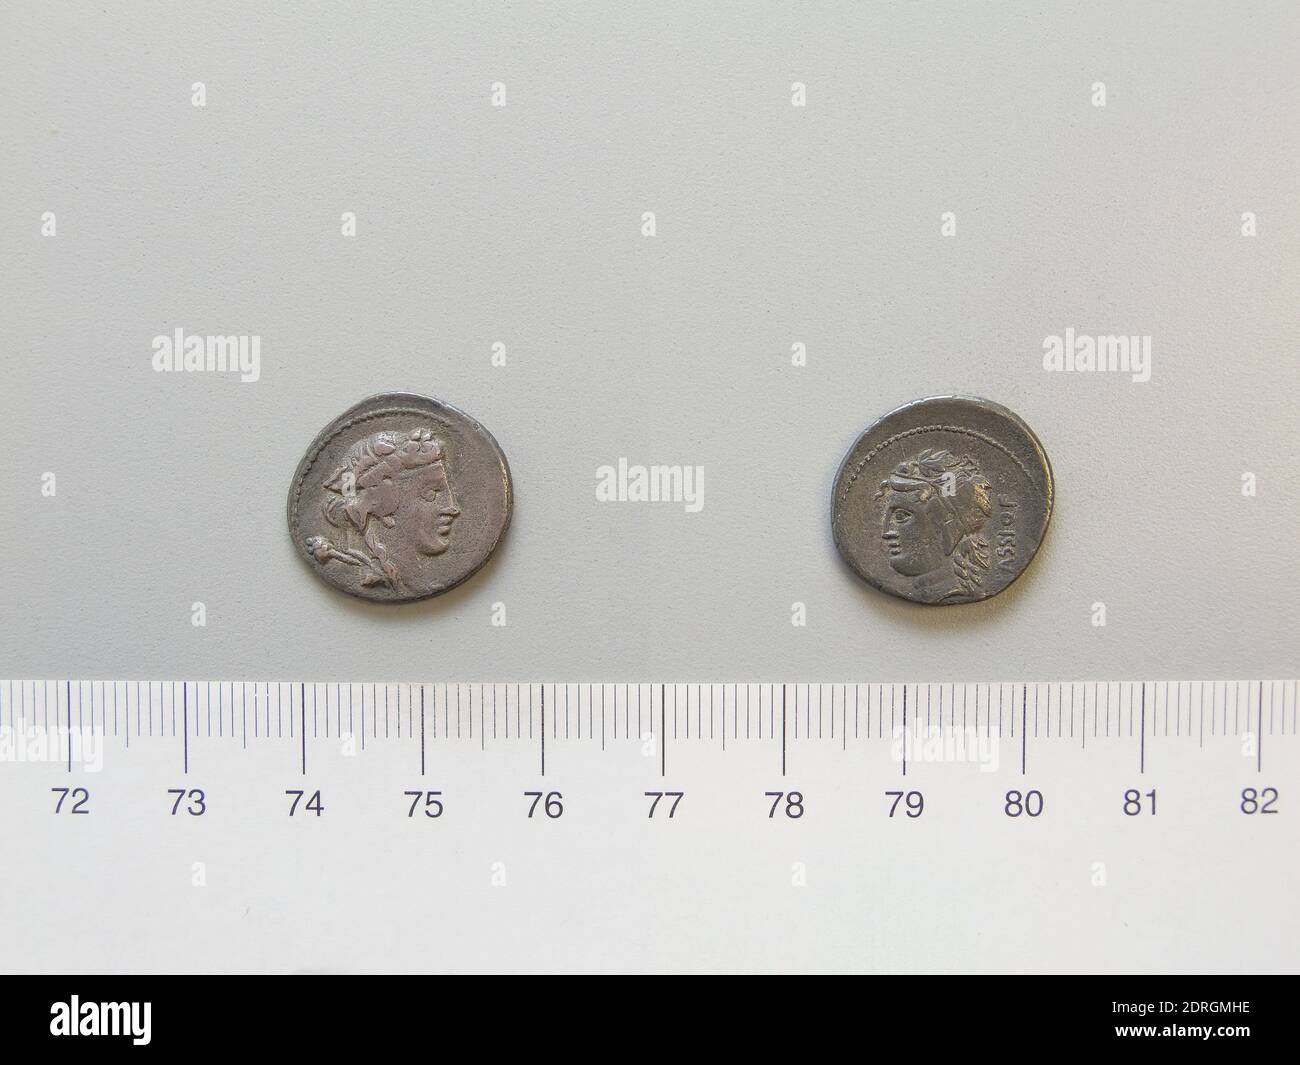 Mint: Rome, Magistrate: L. Cassius Q.f. Longinus, Denarius from Rome, 78 B.C., Silver, 3.73 g, 8:00, 19 mm, Made in Rome, Italy, Roman, 1st century B.C., Numismatics Stock Photo